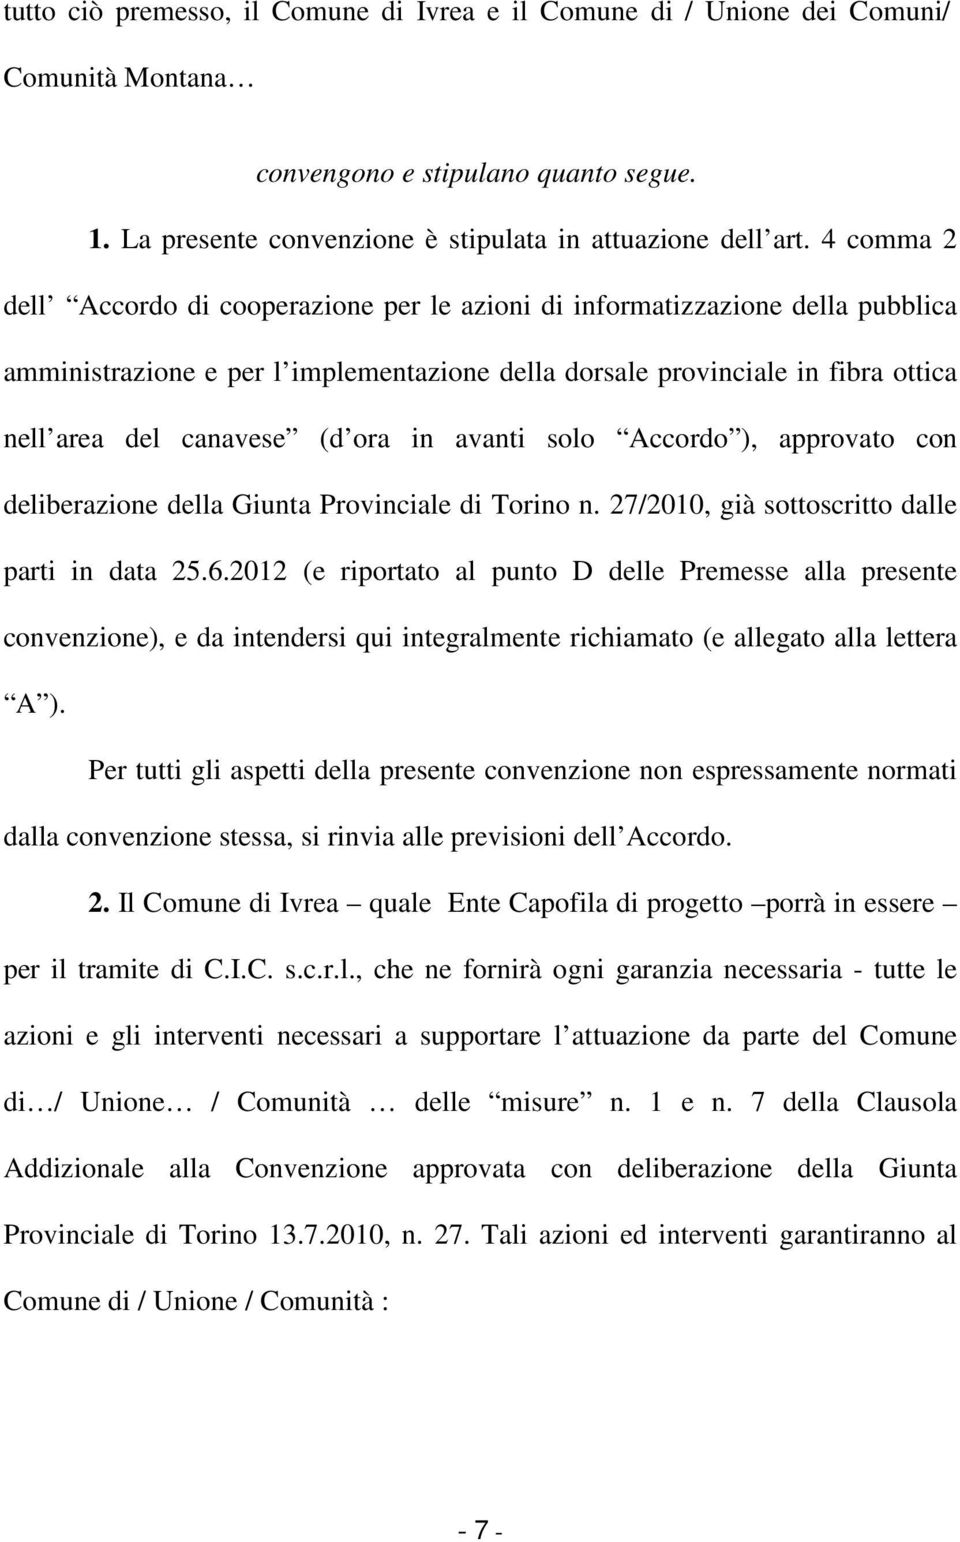 ora in avanti solo Accordo ), approvato con deliberazione della Giunta Provinciale di Torino n. 27/2010, già sottoscritto dalle parti in data 25.6.